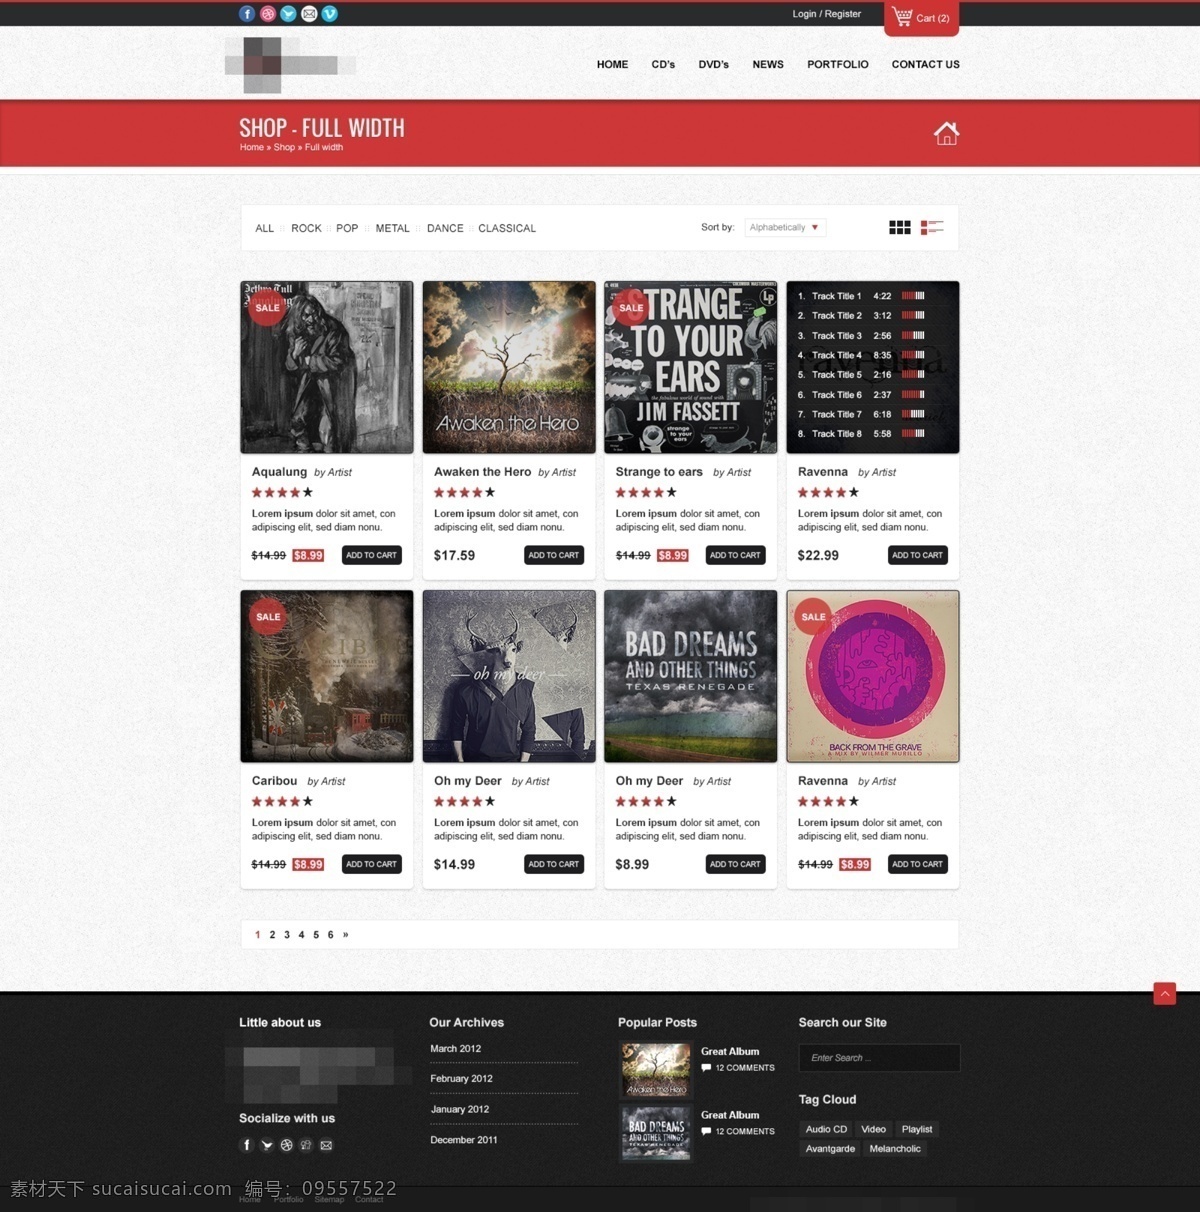 音乐 歌曲 网站设计 红色网站 音乐网站 音乐歌曲网站 歌曲网站 音乐网站模板 网站 模板 歌曲网站模板 模板设计 网站模板 企业模板 音乐模板网站